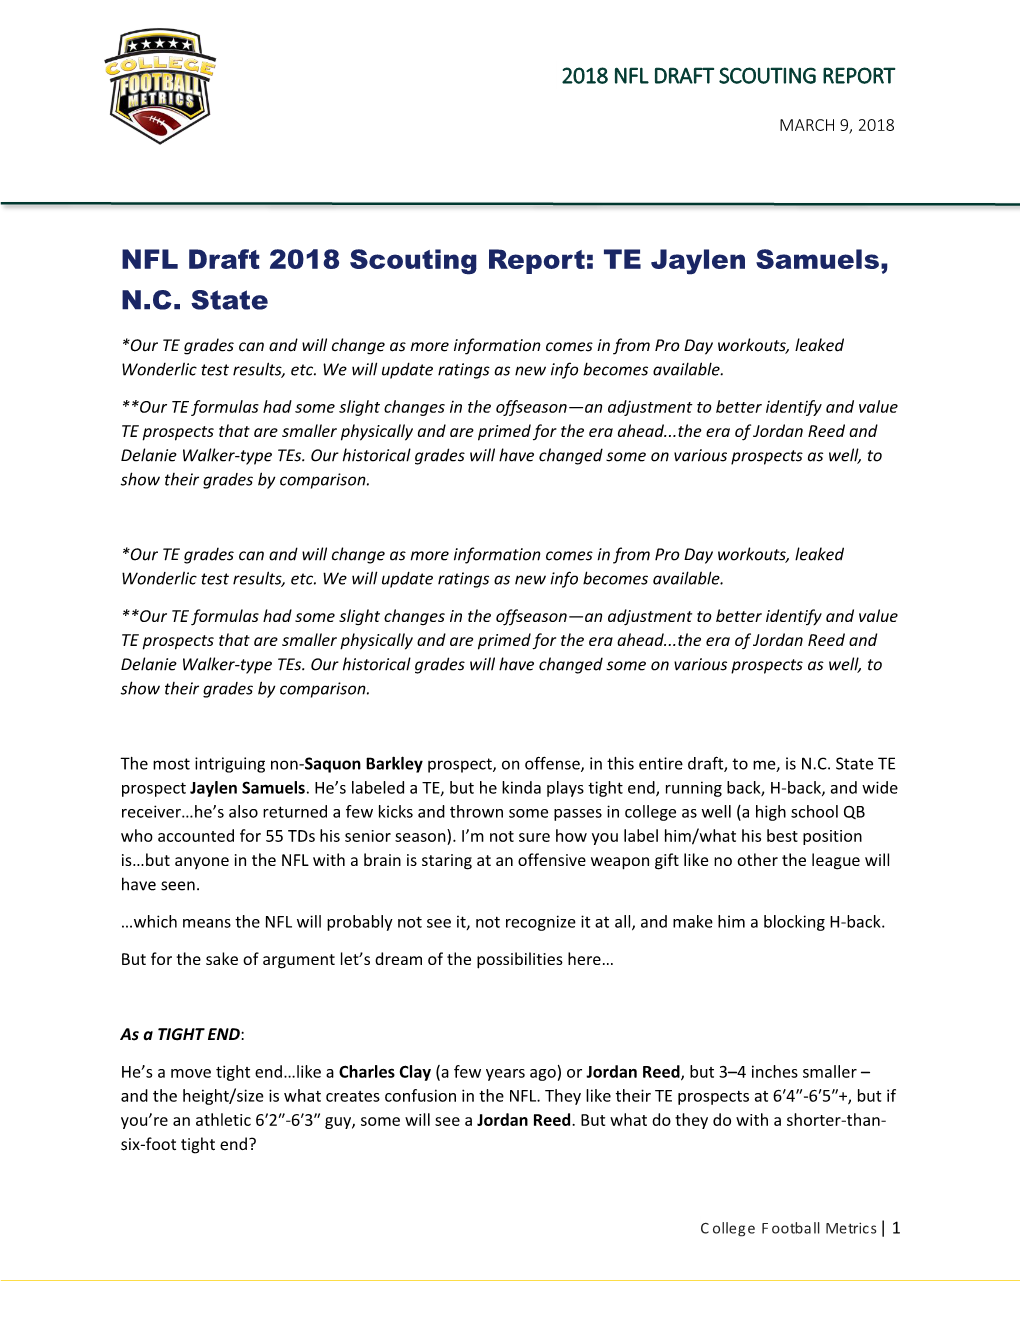 NFL Draft 2018 Scouting Report: TE Jaylen Samuels, N.C. State